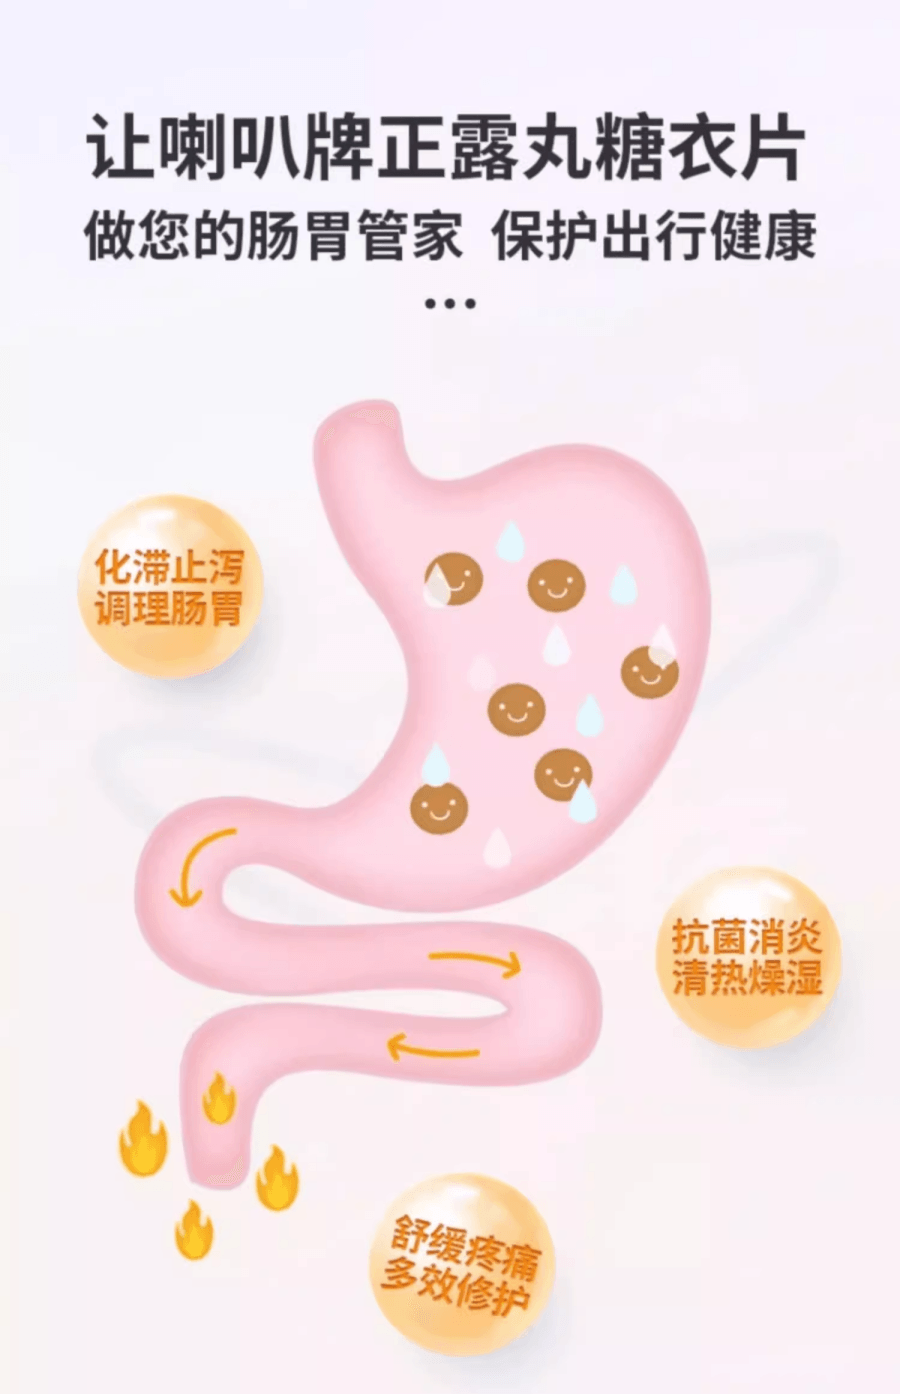 日本大幸药品喇叭牌正露丸糖衣84粒 便携装软便腹泻胃痛 止泻 无味白粒盒装